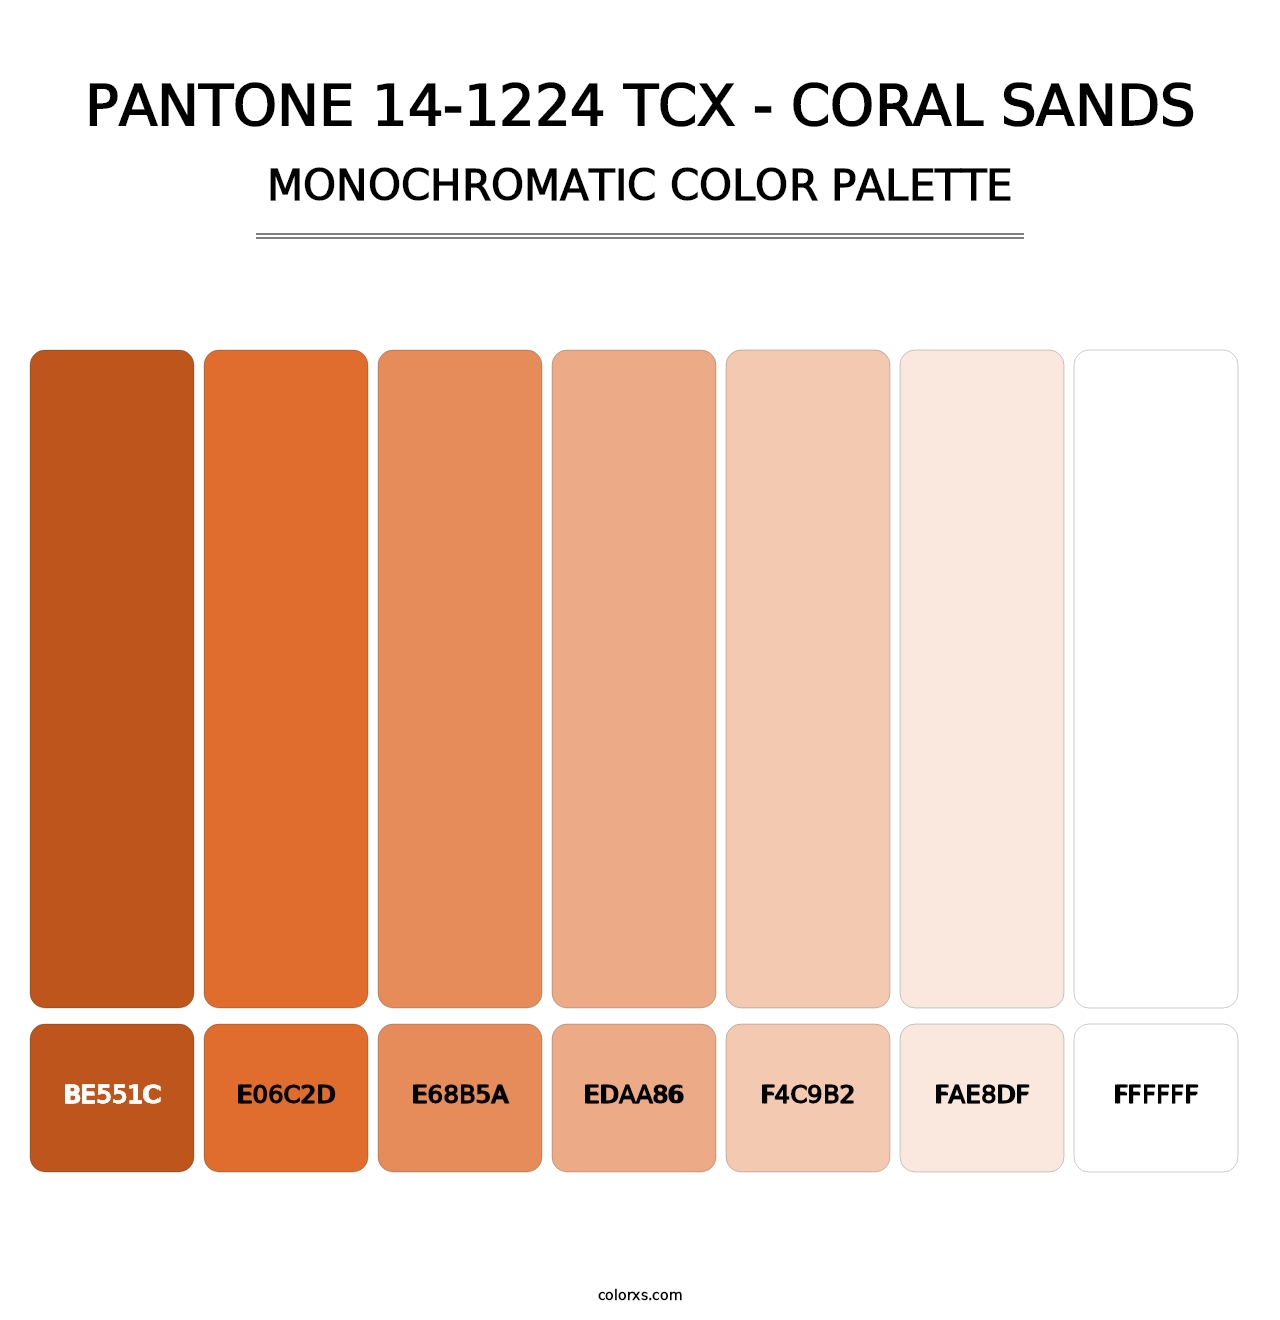 PANTONE 14-1224 TCX - Coral Sands - Monochromatic Color Palette